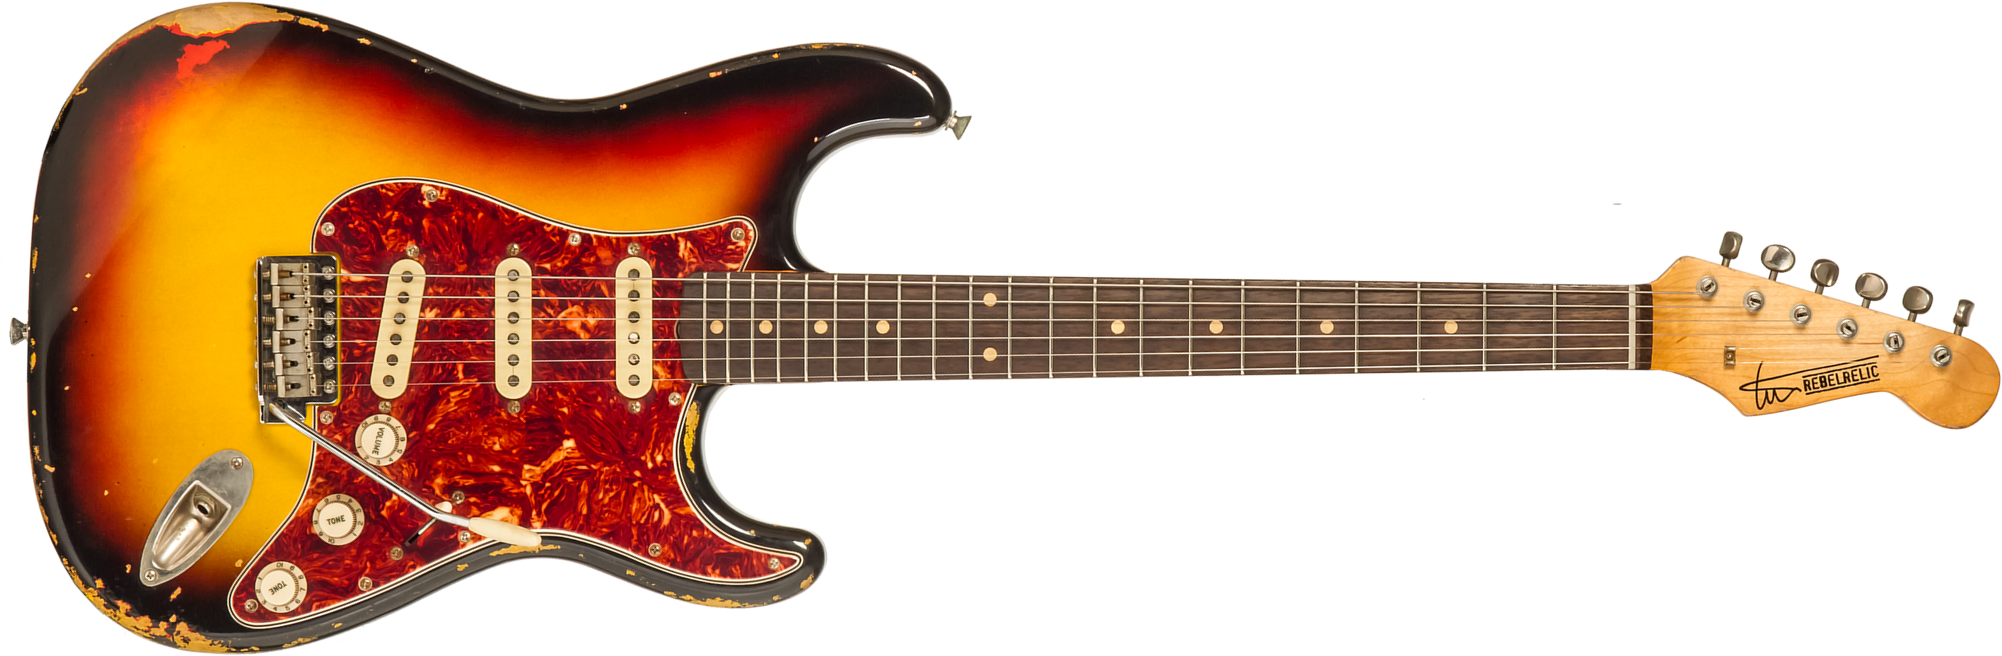 Rebelrelic S-series 1962 3s Trem Rw #231009 - 3-tone Sunburst - E-Gitarre in Str-Form - Main picture